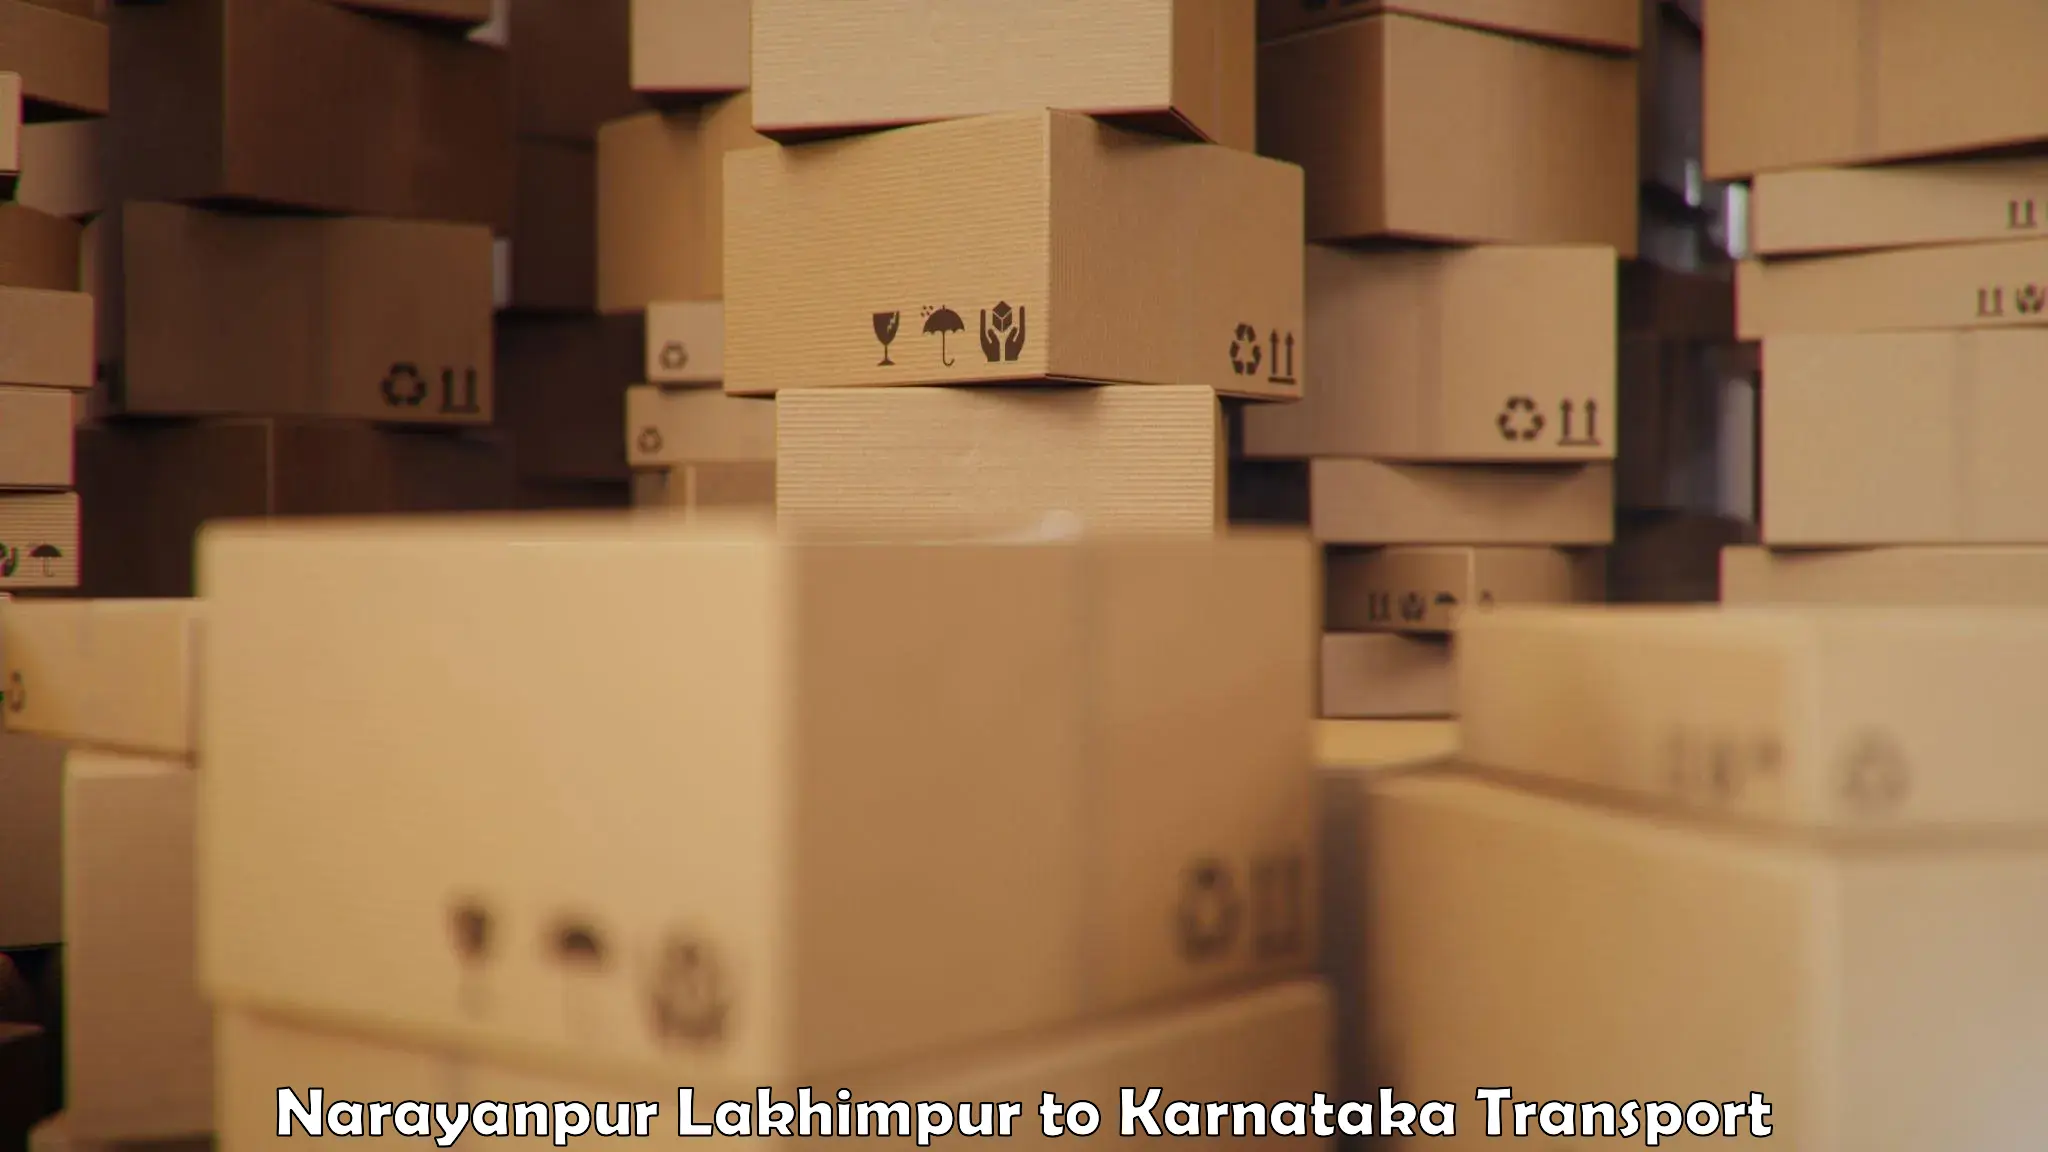 Interstate transport services Narayanpur Lakhimpur to Ukkadagatri